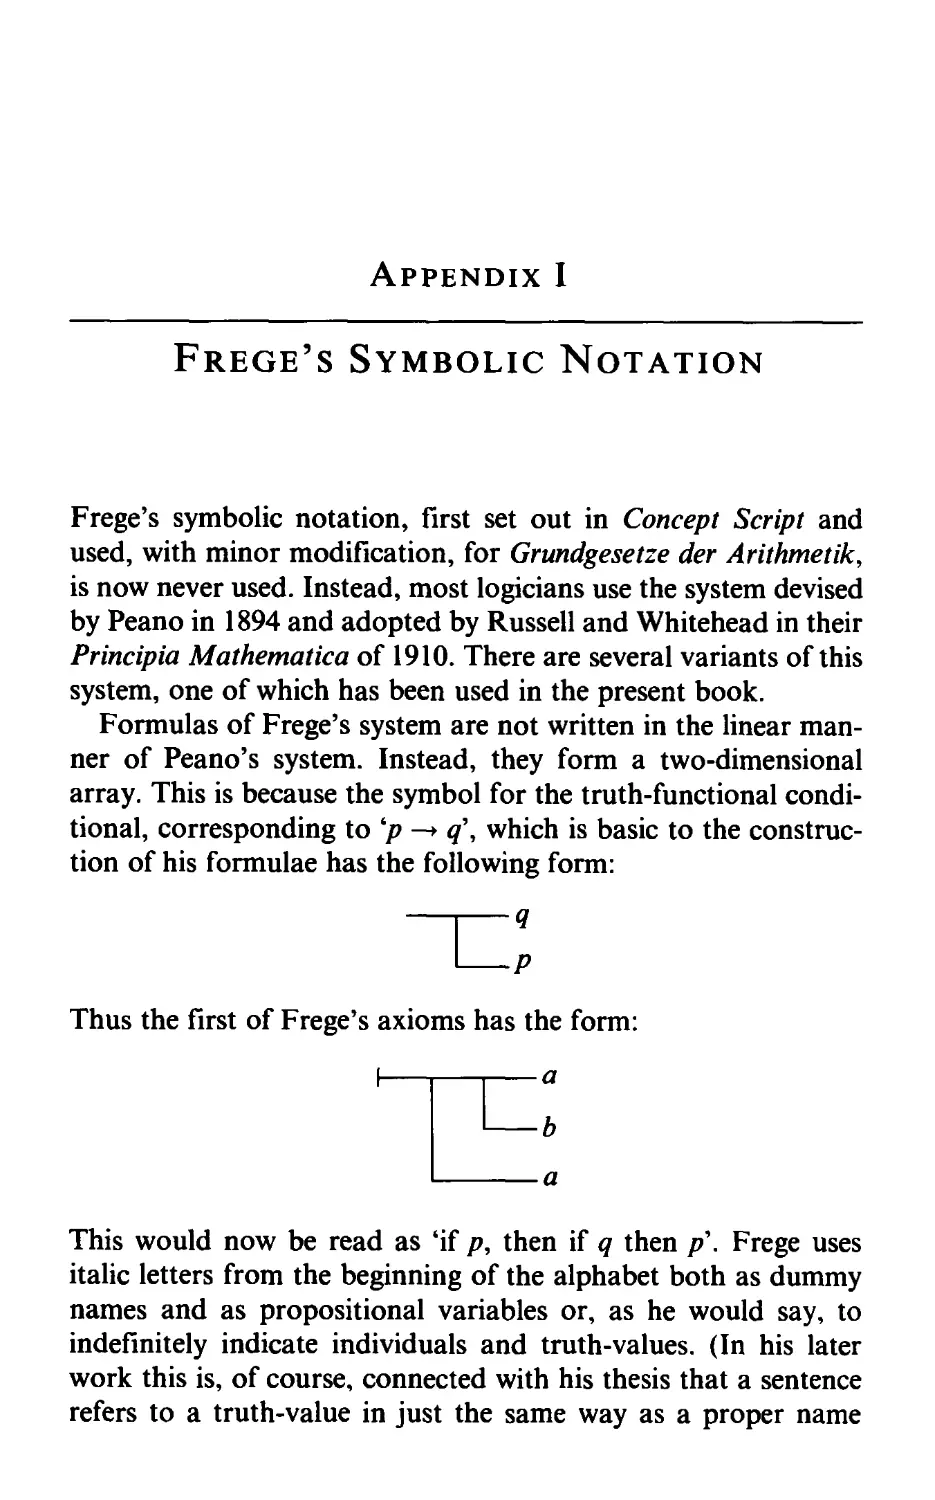 Appendix I. Frege's Symbolic Notation